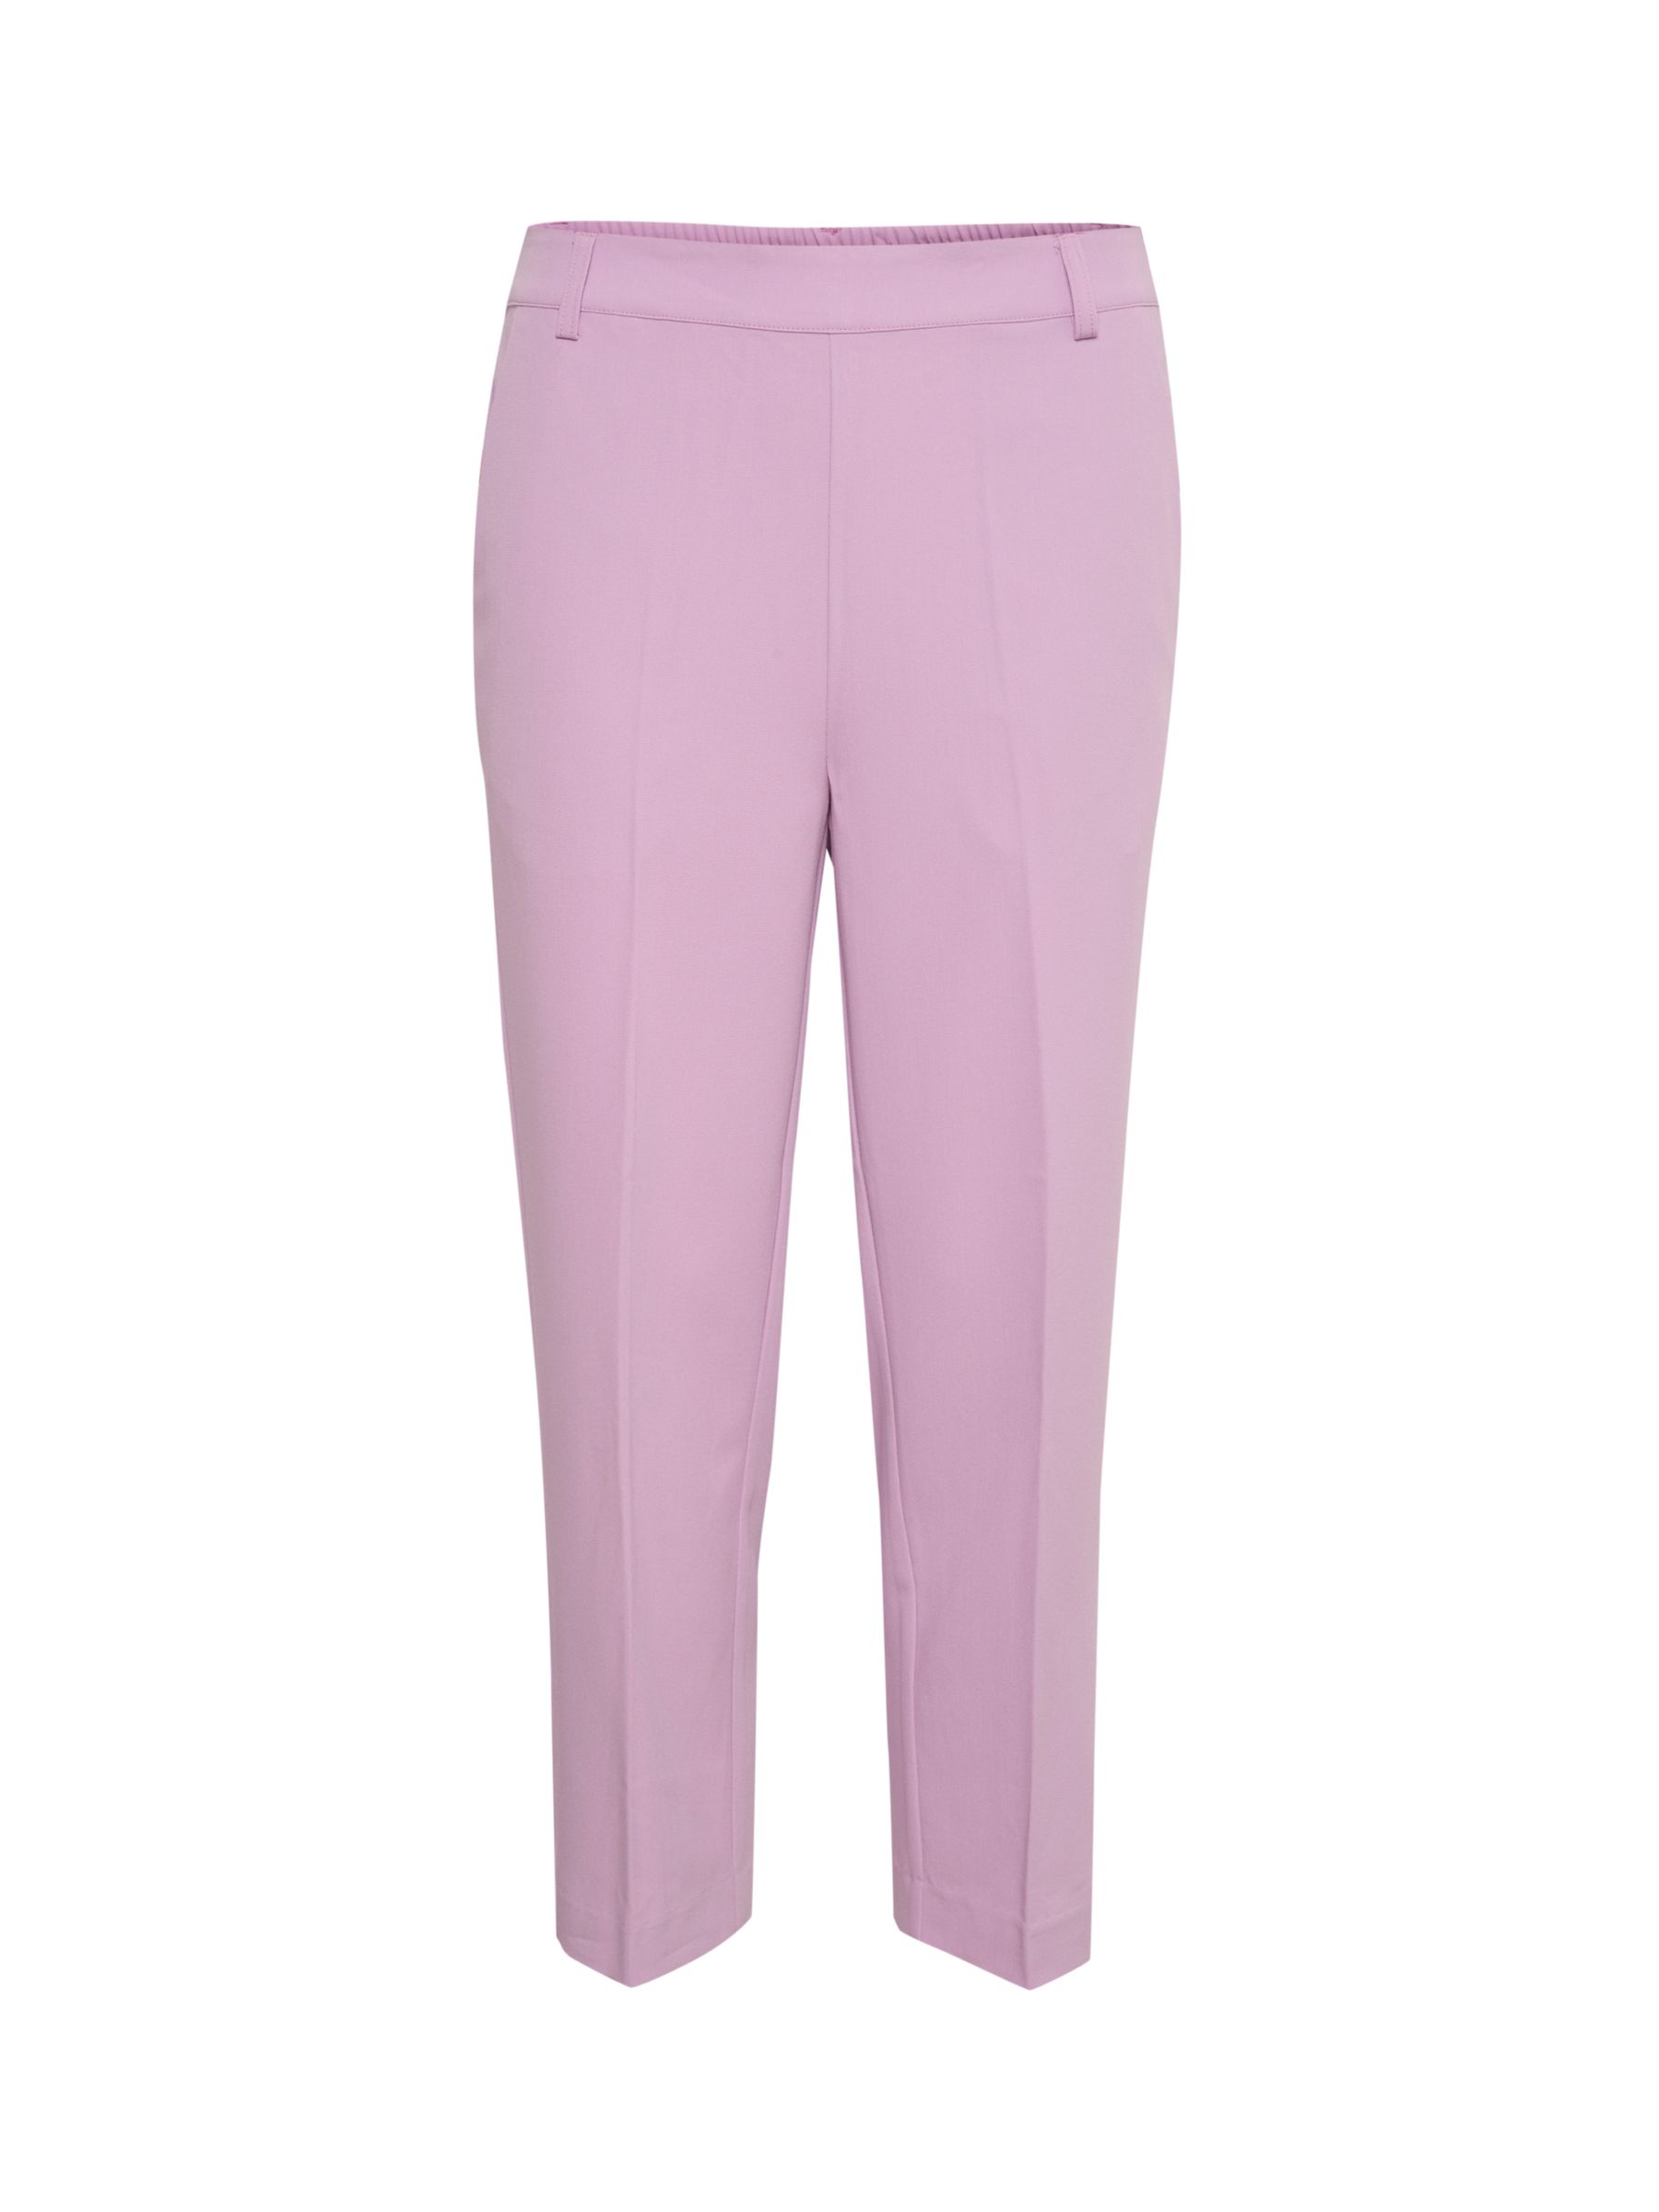 KAFFE Sakura Cropped Trousers, Lupine at John Lewis & Partners